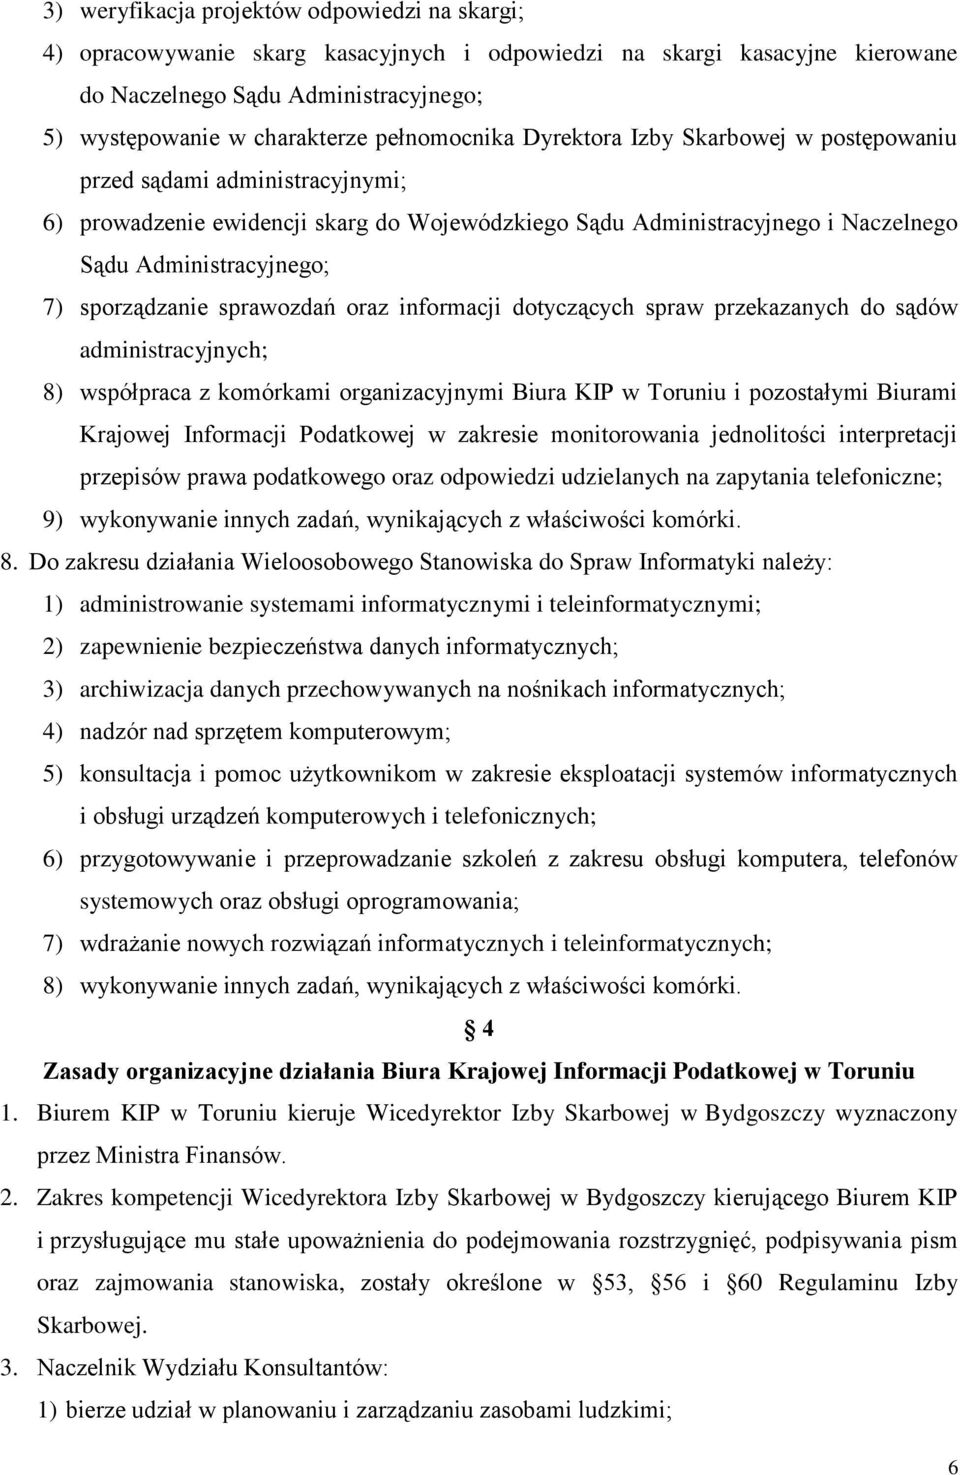 sporządzanie sprawozdań oraz informacji dotyczących spraw przekazanych do sądów administracyjnych; 8) współpraca z komórkami organizacyjnymi Biura KIP w Toruniu i pozostałymi Biurami Krajowej